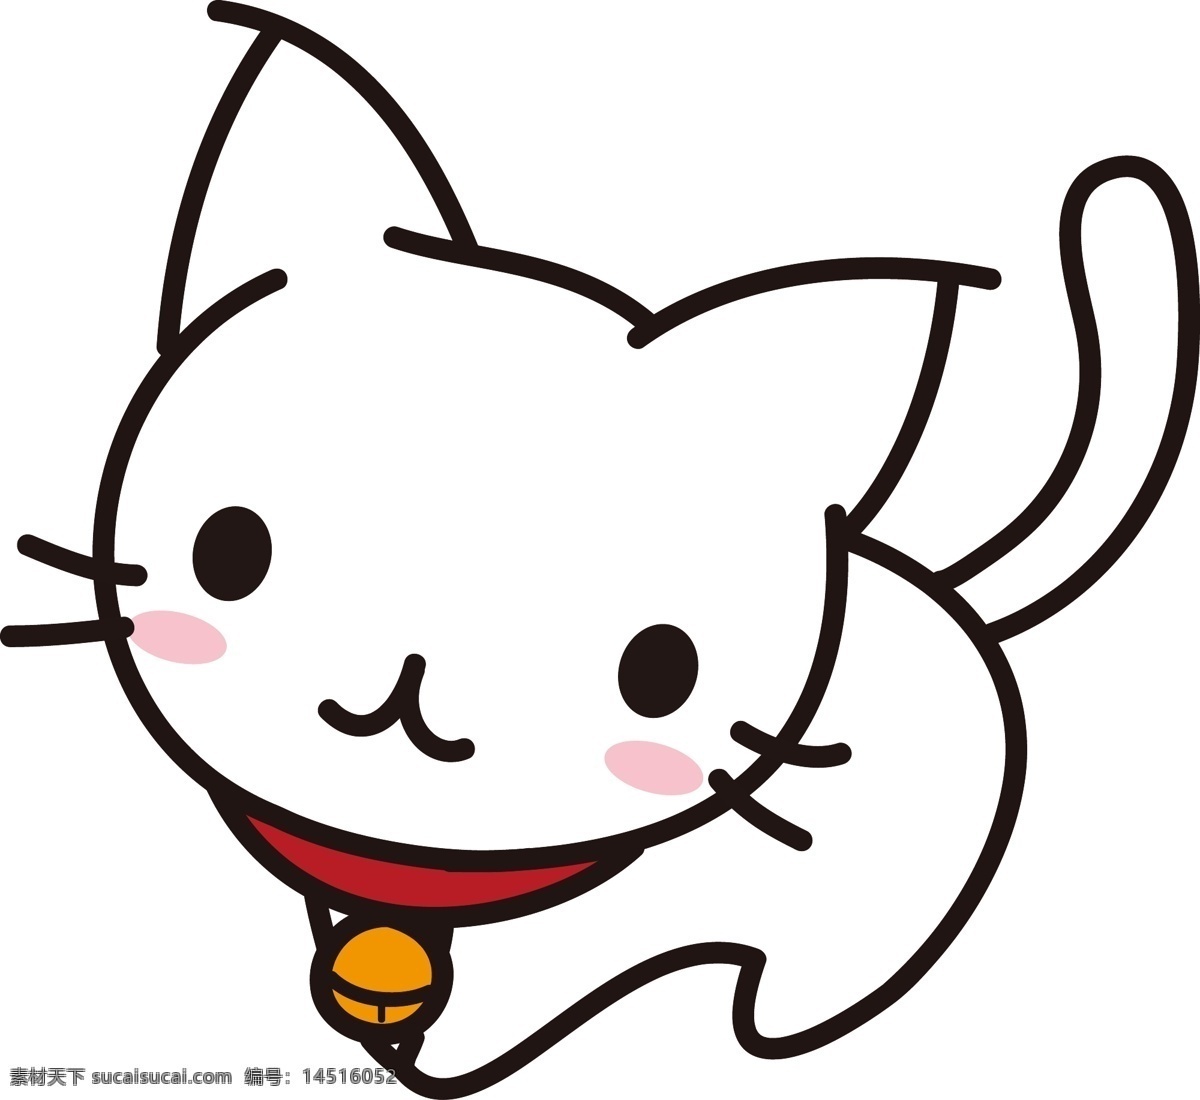 矢量 手绘 卡通 白色 猫咪 铃铛 可爱 尾巴 分色 黄色 红色 黑色 描边猫咪 可爱猫咪